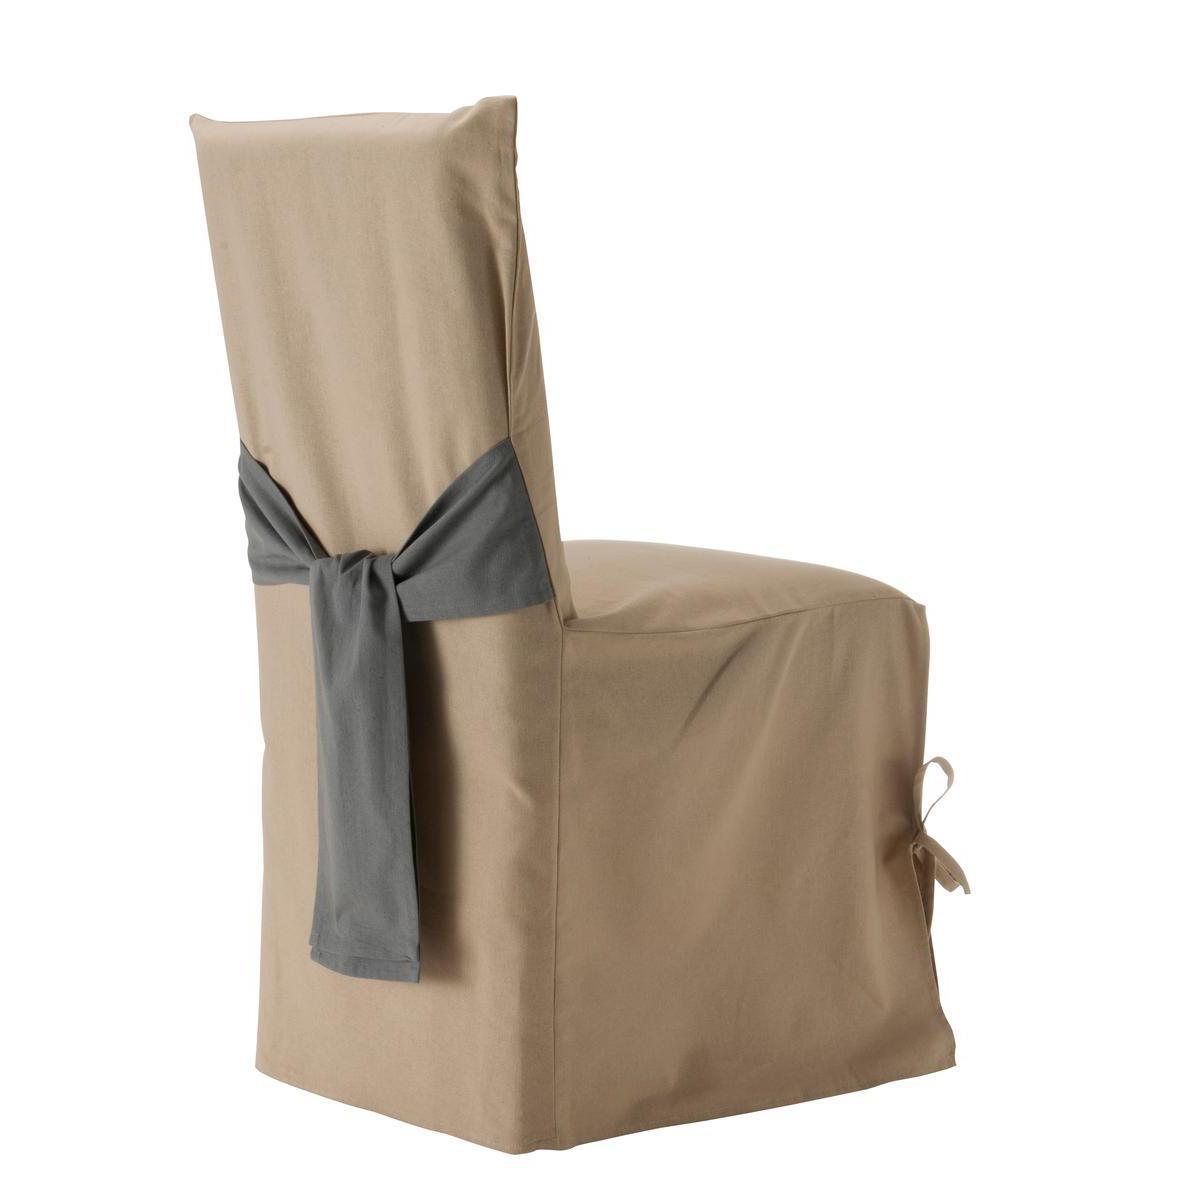 Housse de chaise bicolore - Coton - 45 x 50 cm - Gris et beige